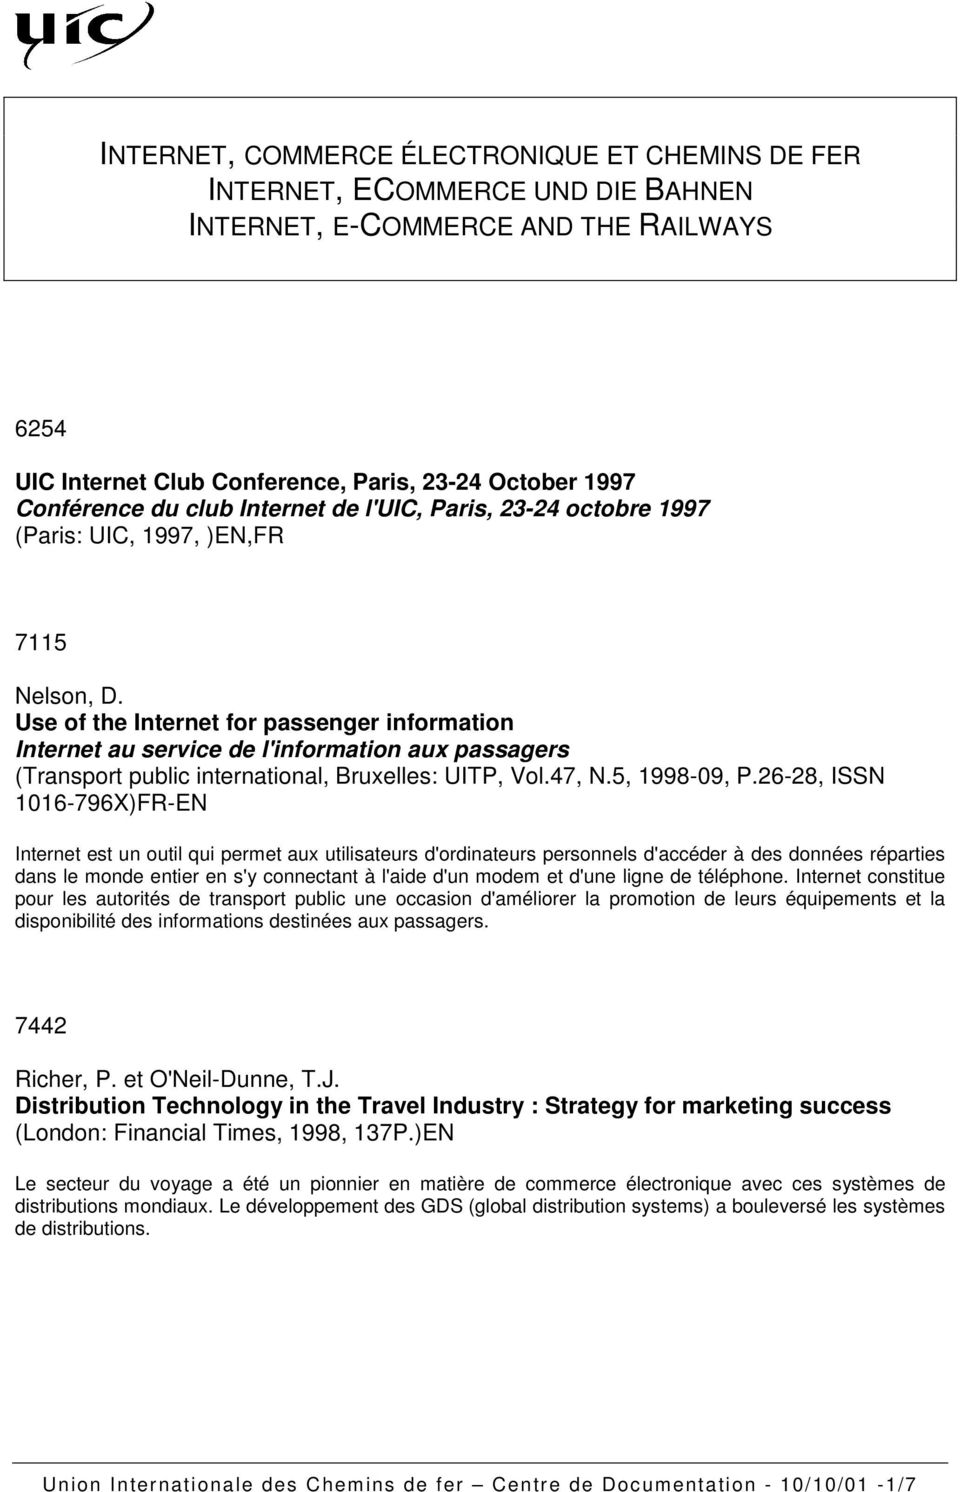 Use of the Internet for passenger information Internet au service de l'information aux passagers (Transport public international, Bruxelles: UITP, Vol.47, N.5, 1998-09, P.